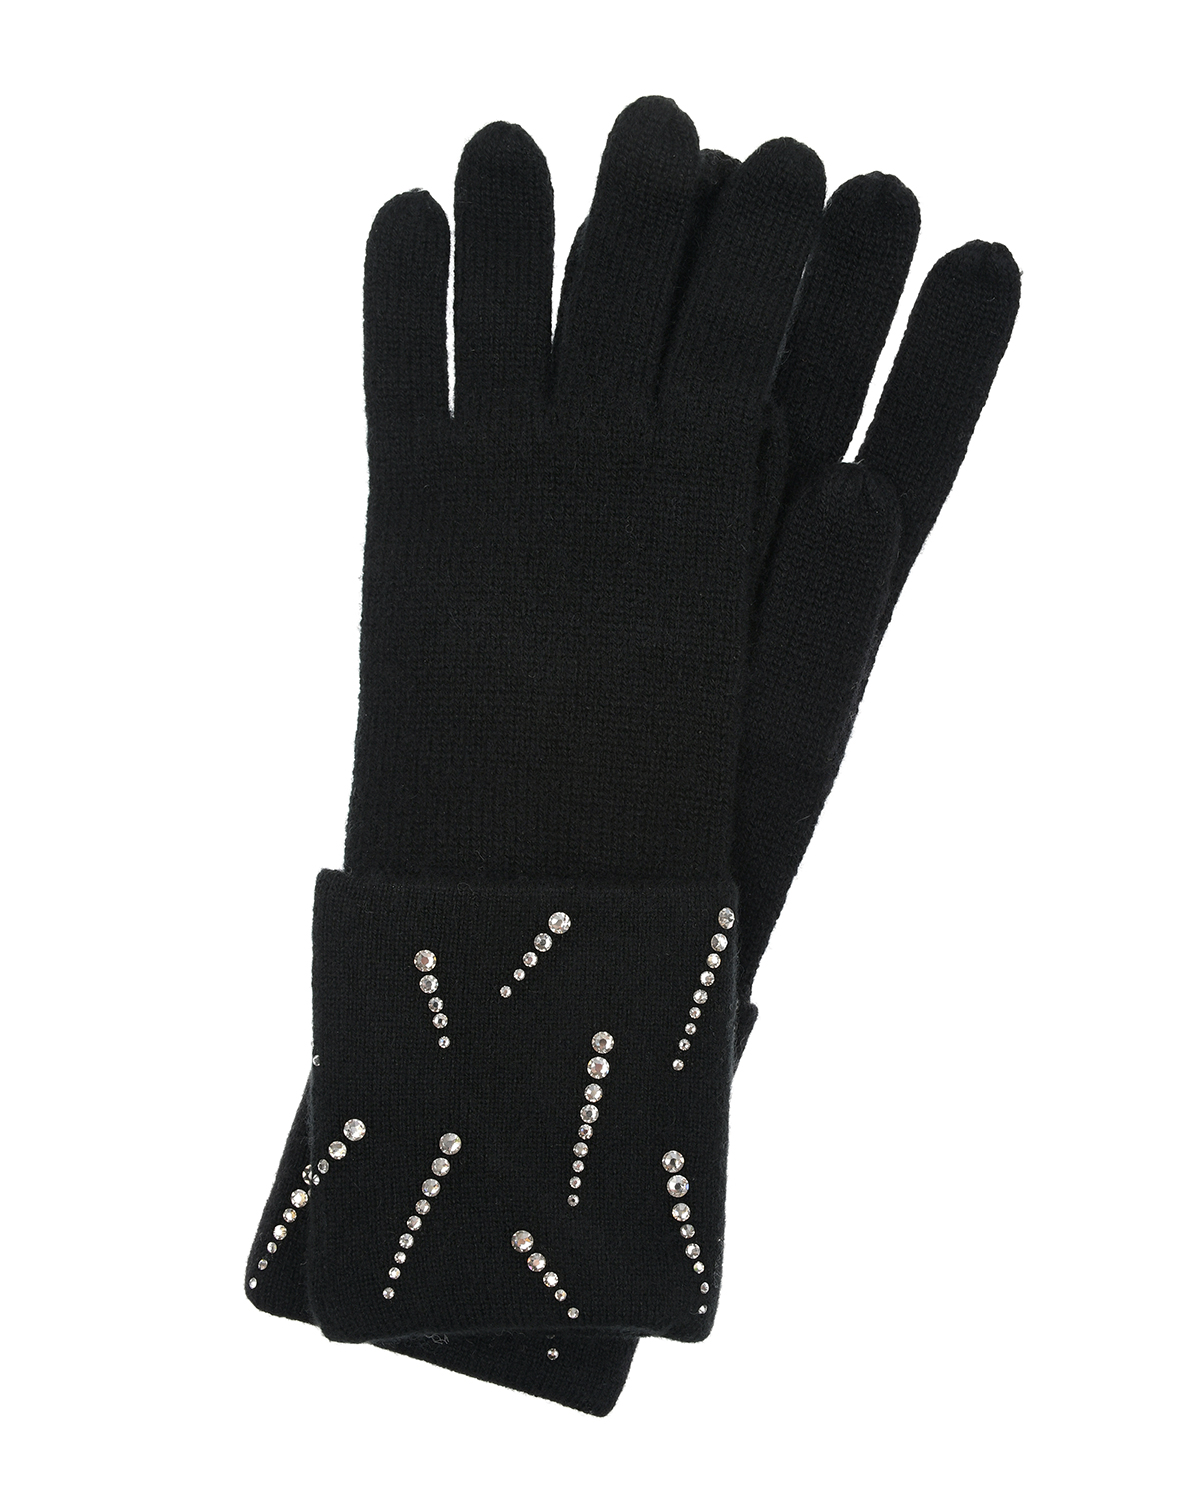 Черные кашемировые перчатки с кристаллами Swarovski William Sharp, размер unica, цвет черный - фото 1